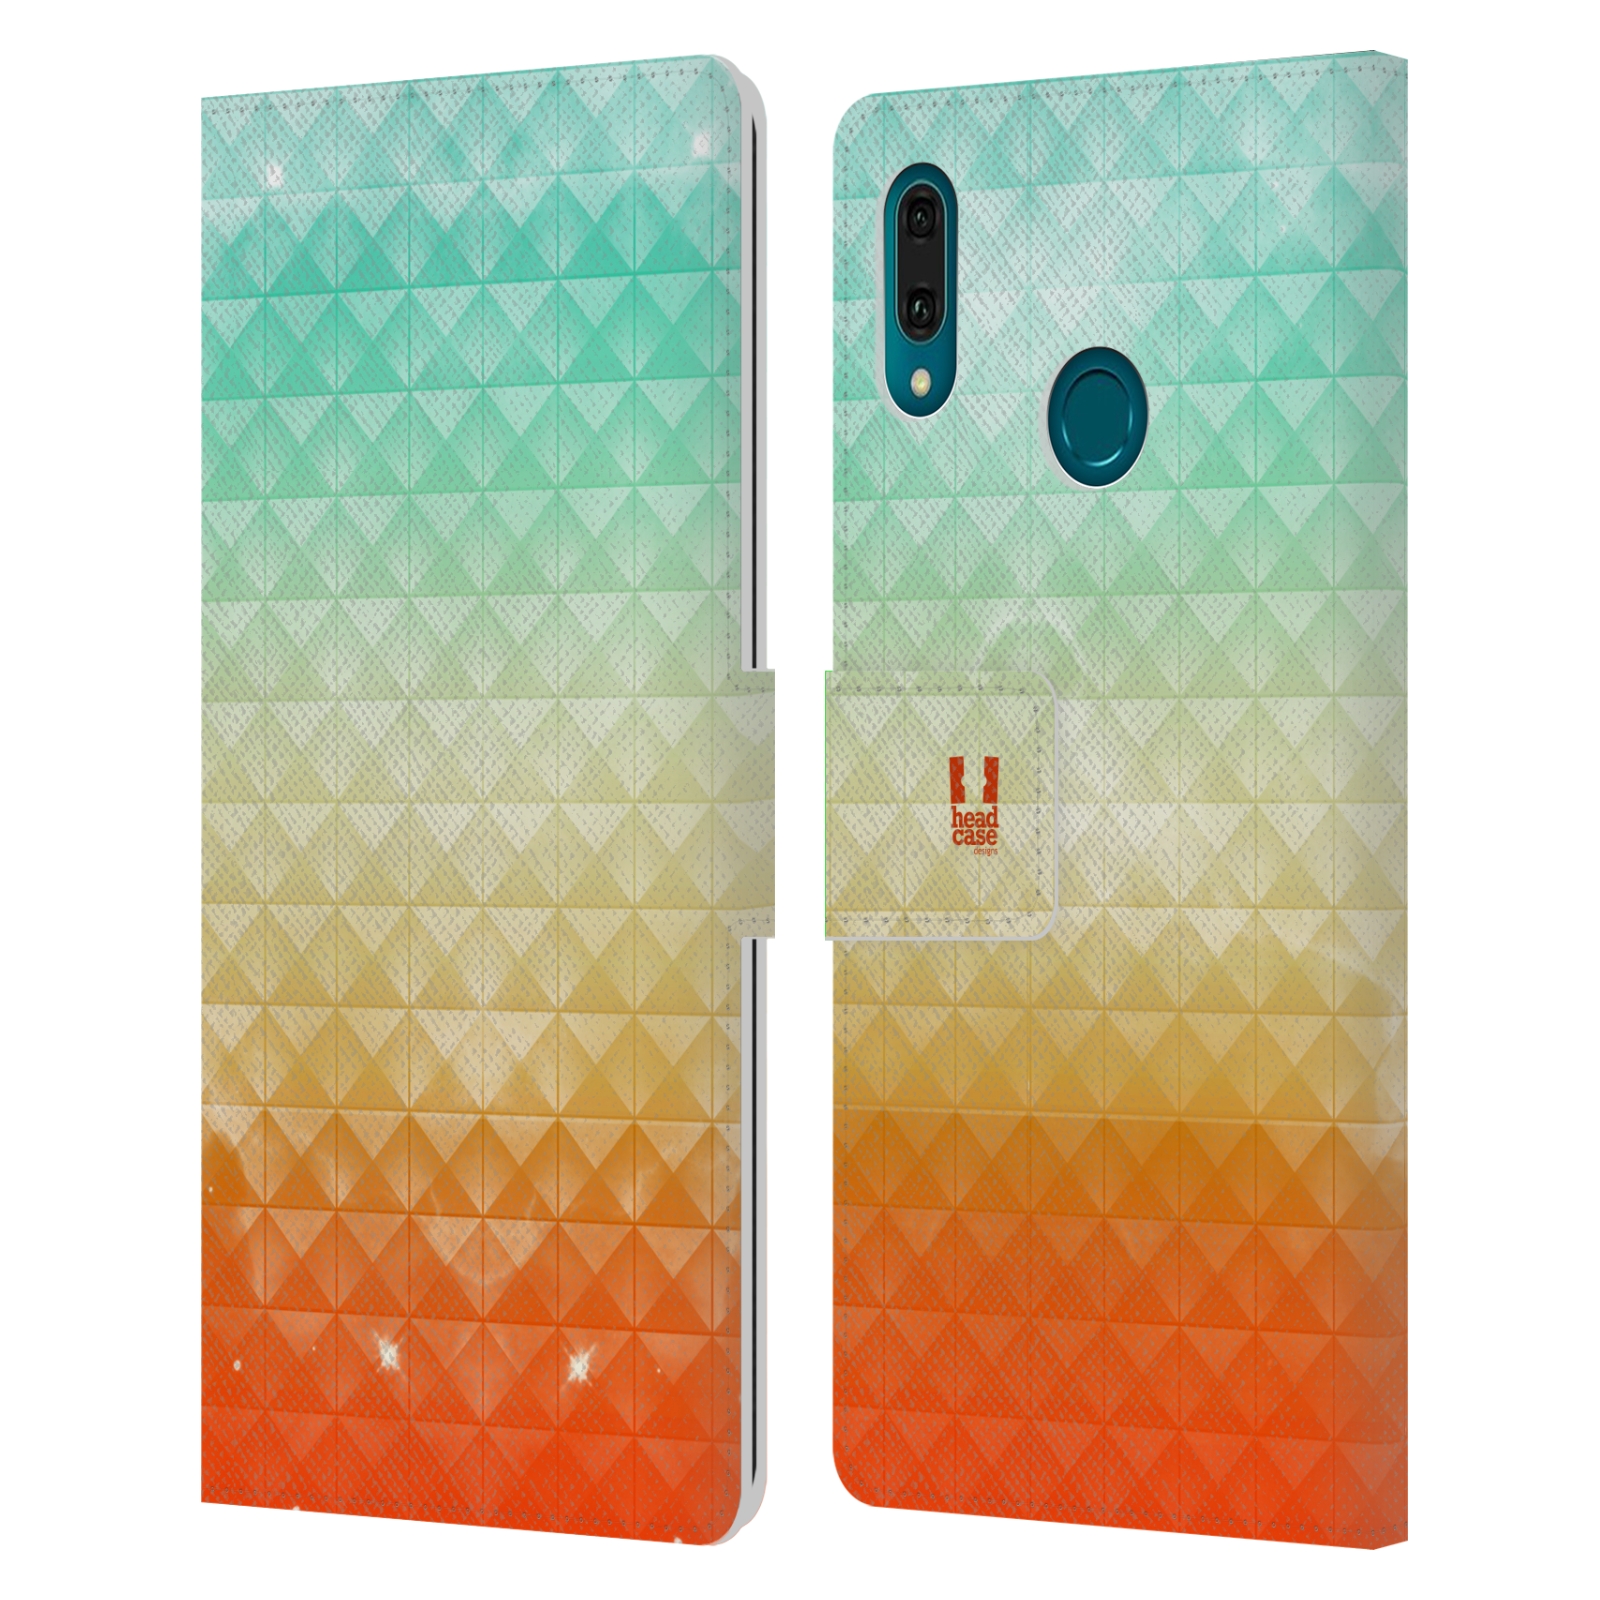 Pouzdro na mobil Huawei Y9 2019 barevná vesmírná mlhovina oranžová a tyrkysová